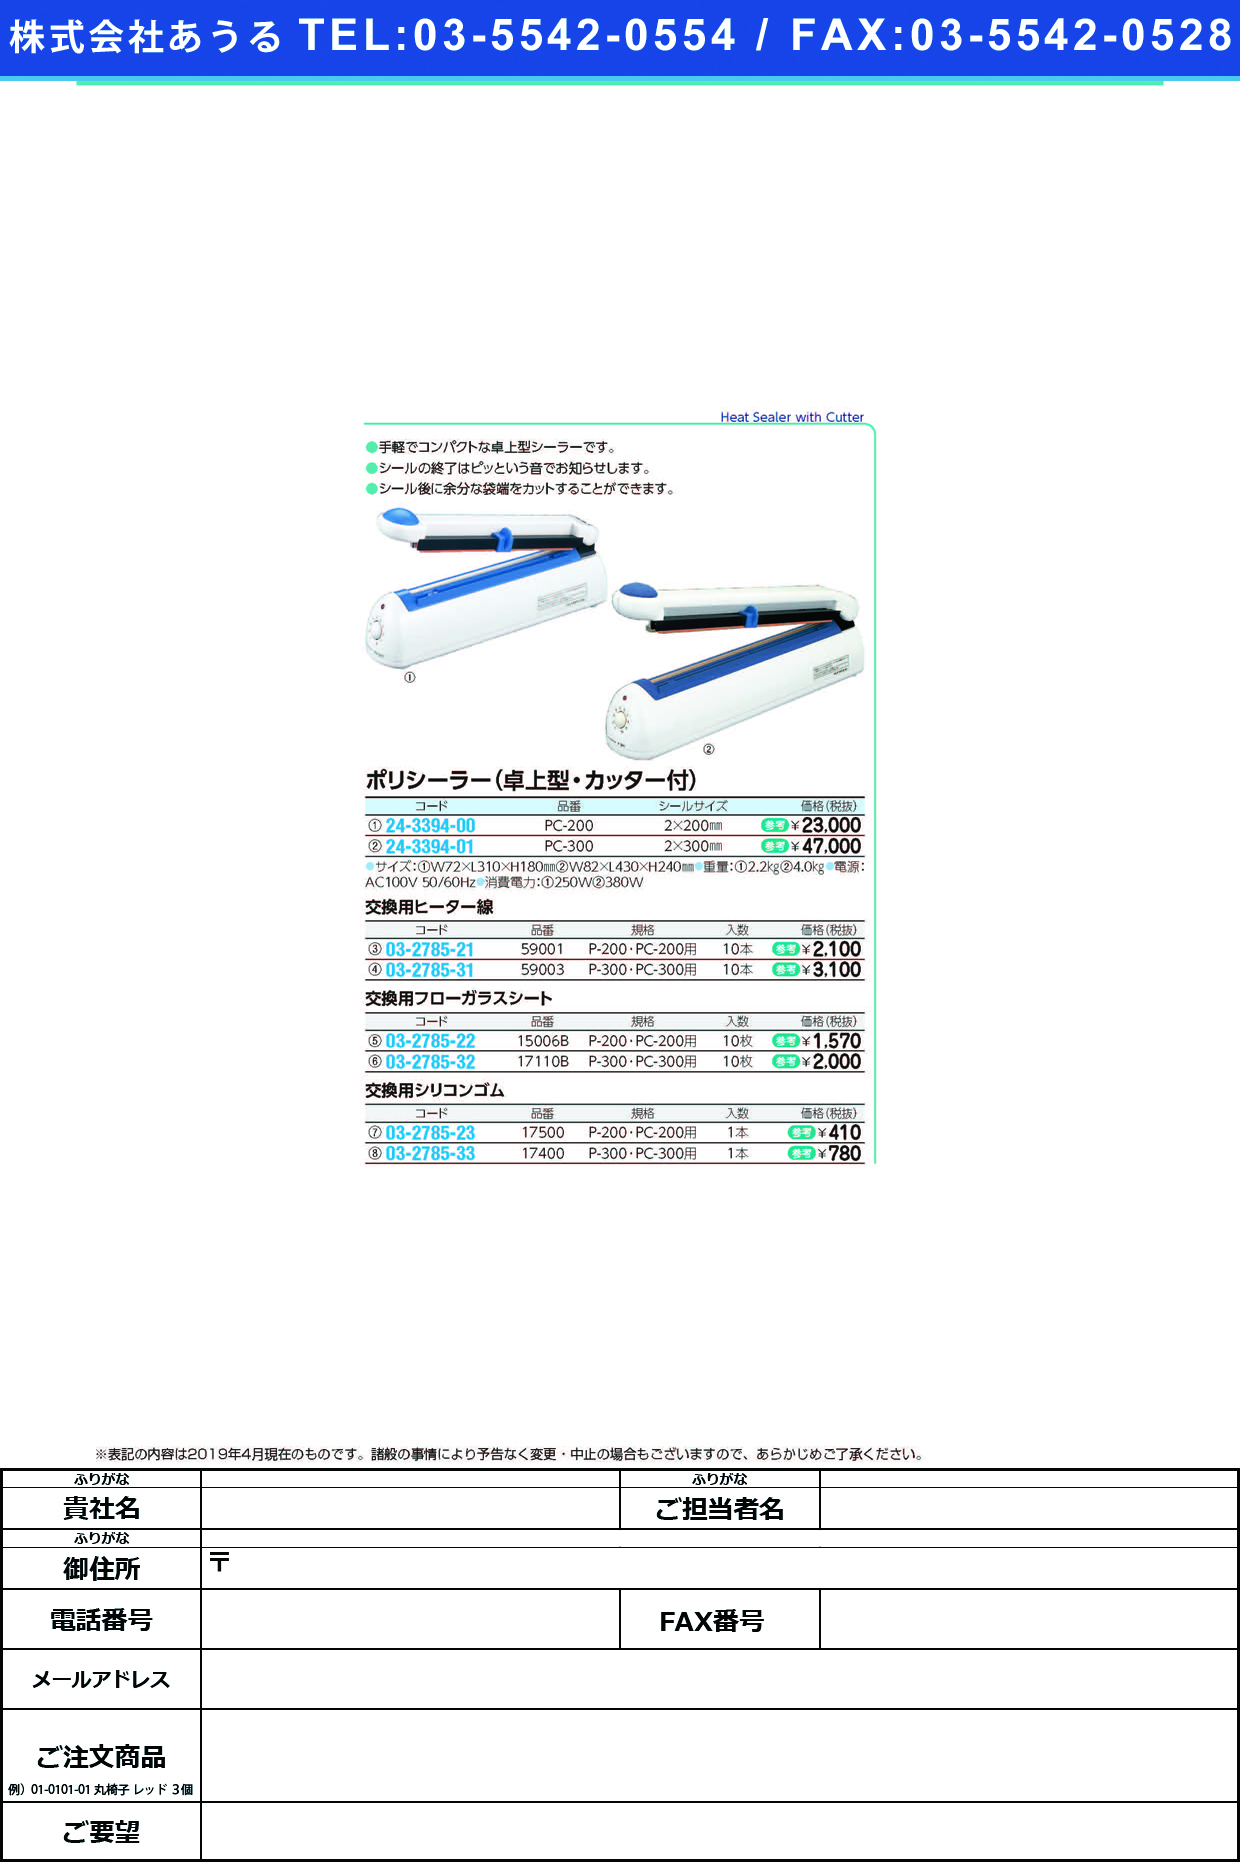 (24-3394-00)ポリシーラー（卓上型）カッター付 PC-200 ﾎﾟﾘｼｰﾗｰﾀｸｼﾞｮｳｶｯﾀｰﾂｷ【1台単位】【2019年カタログ商品】